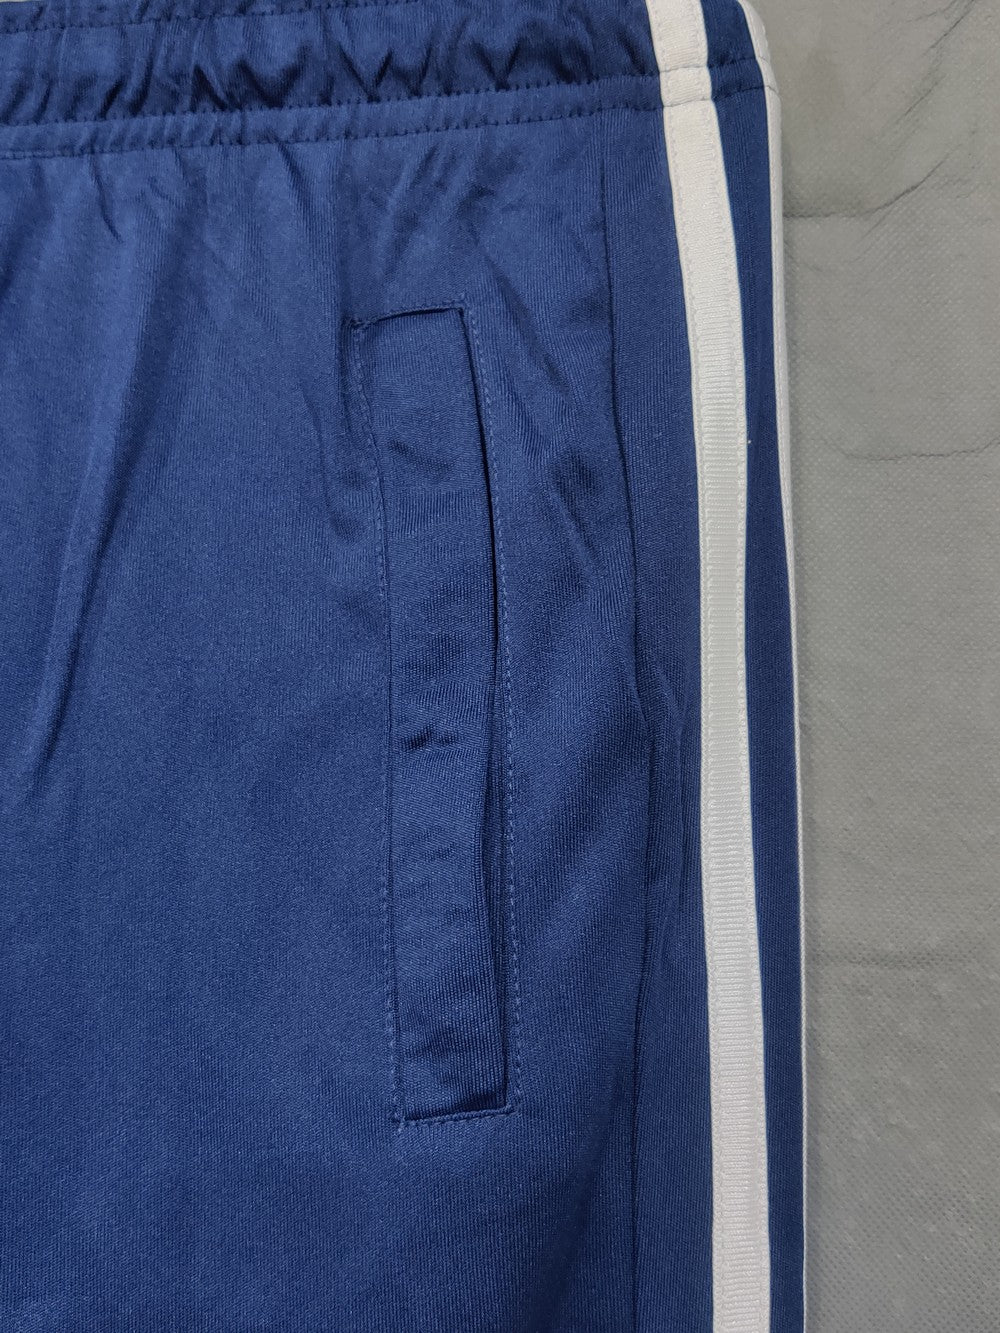 Preloved Labels Branded Original Polyester For Men Tracksuits